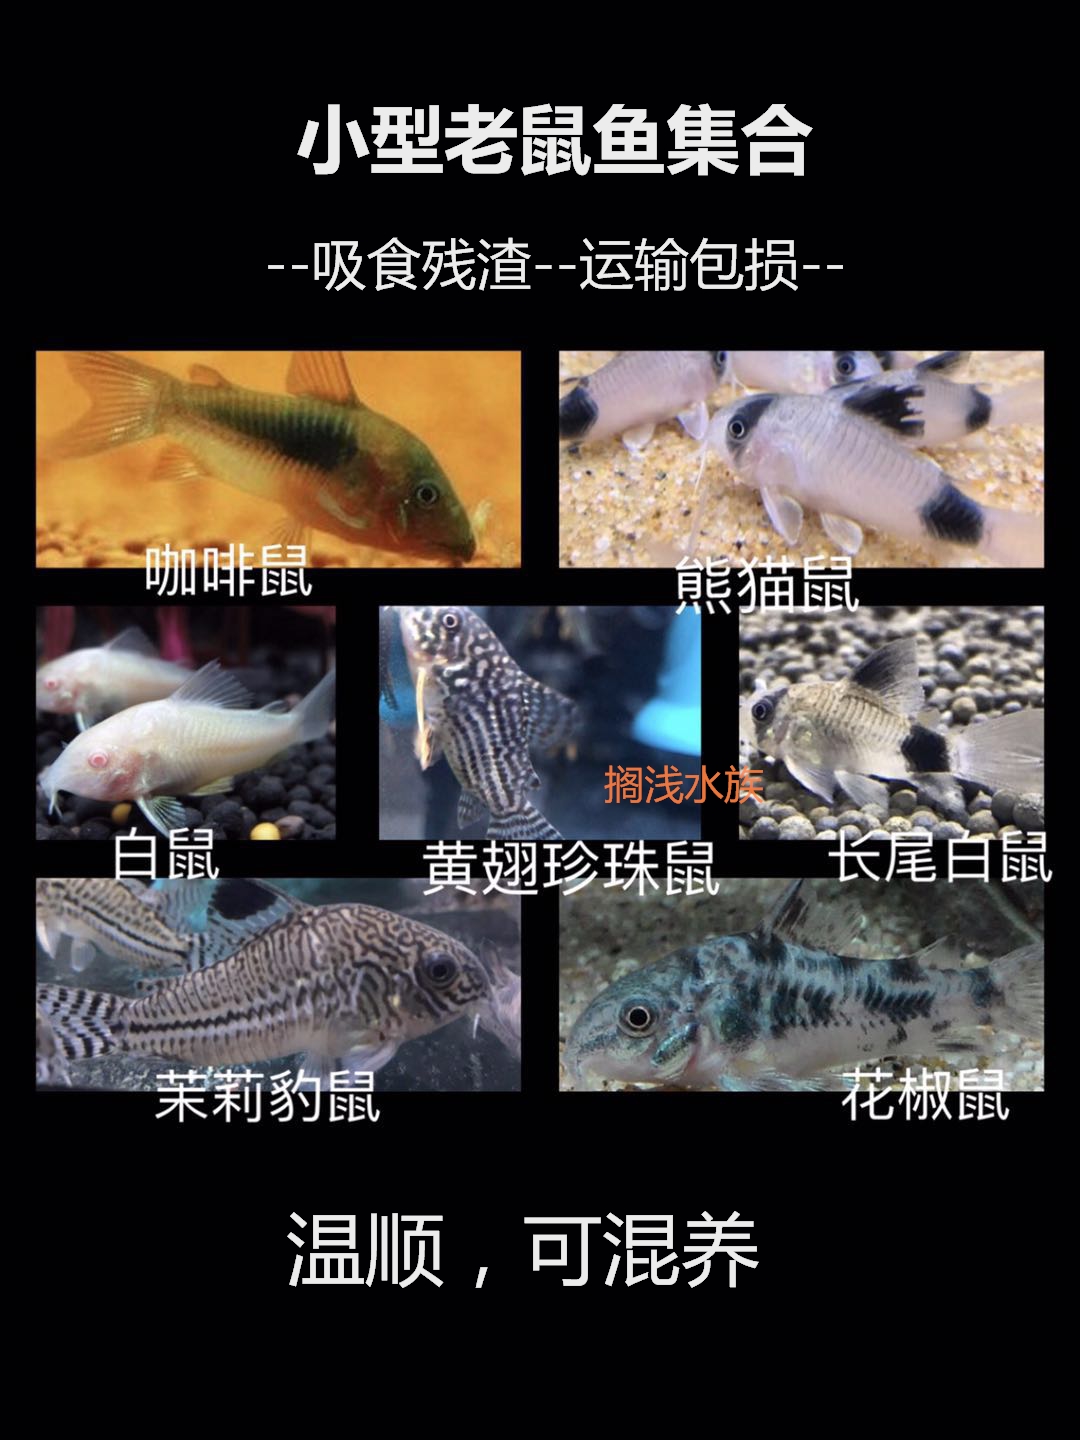 熊猫鼠长尾咖啡白鼠茉莉豹黄翅珍珠花椒鼠种鱼工具活体鱼吸食残渣